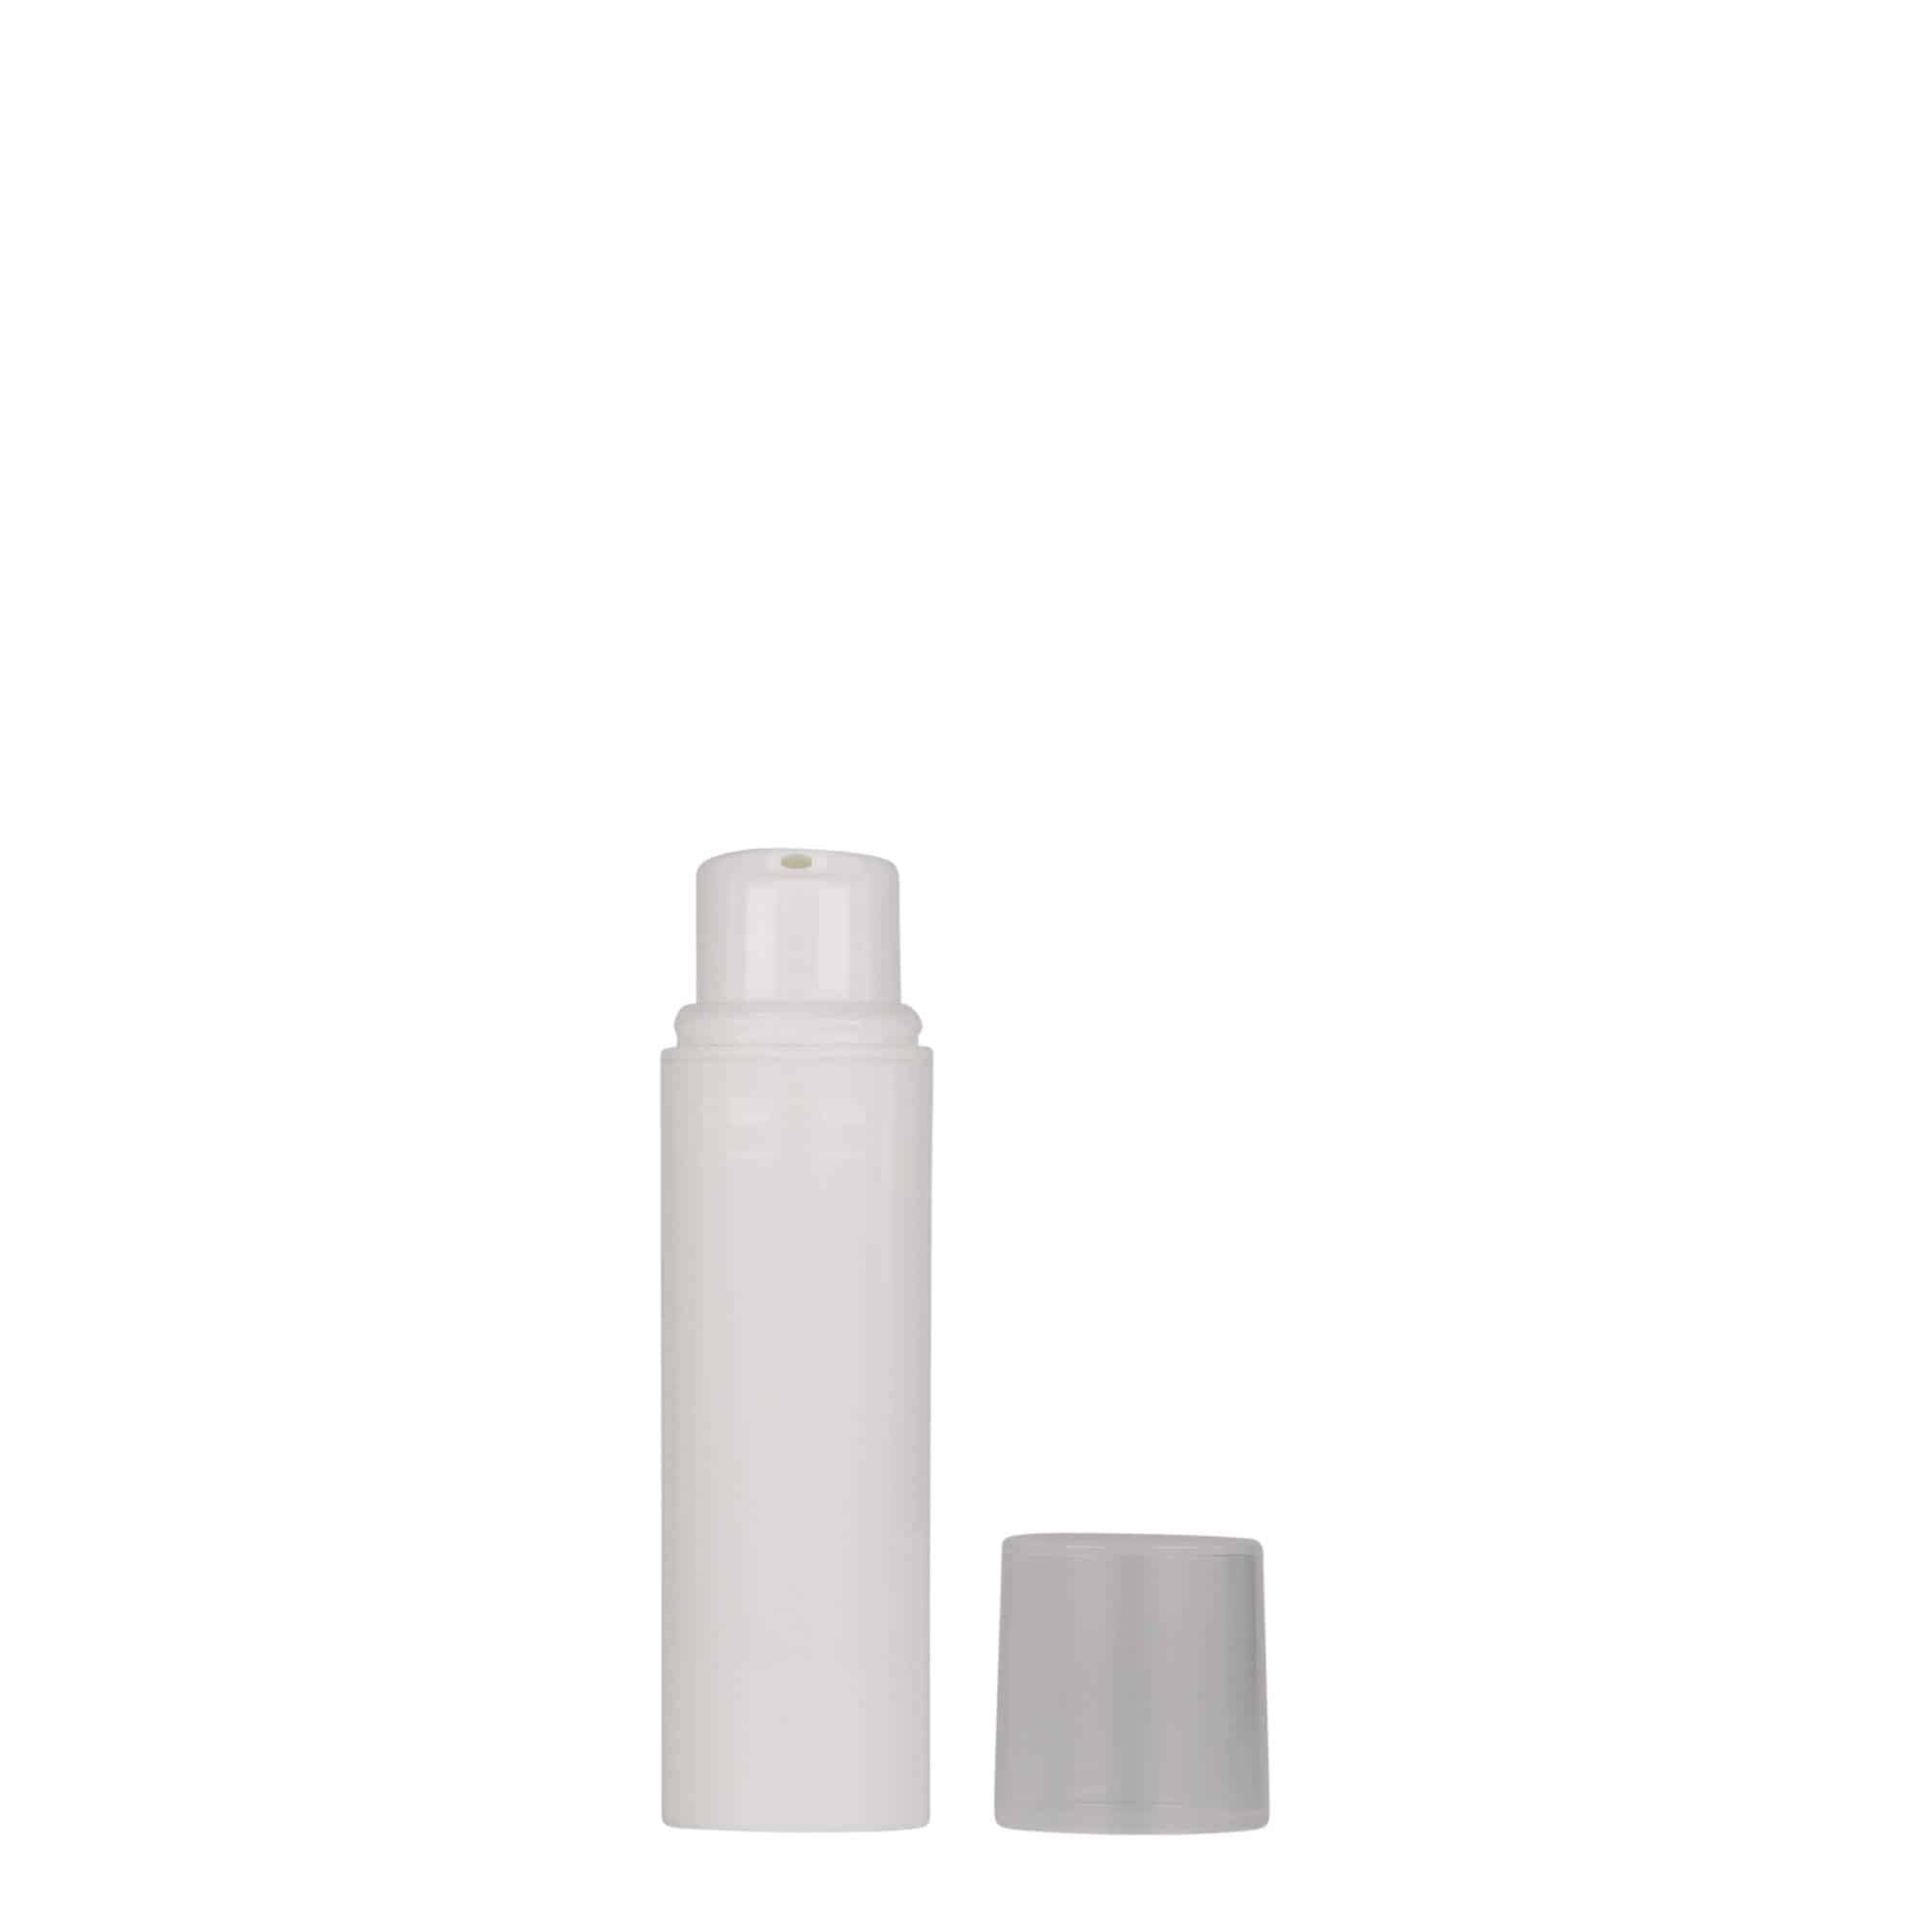 Bezvzduchový dávkovač 10 ml 'Nano', plast PP, bílý